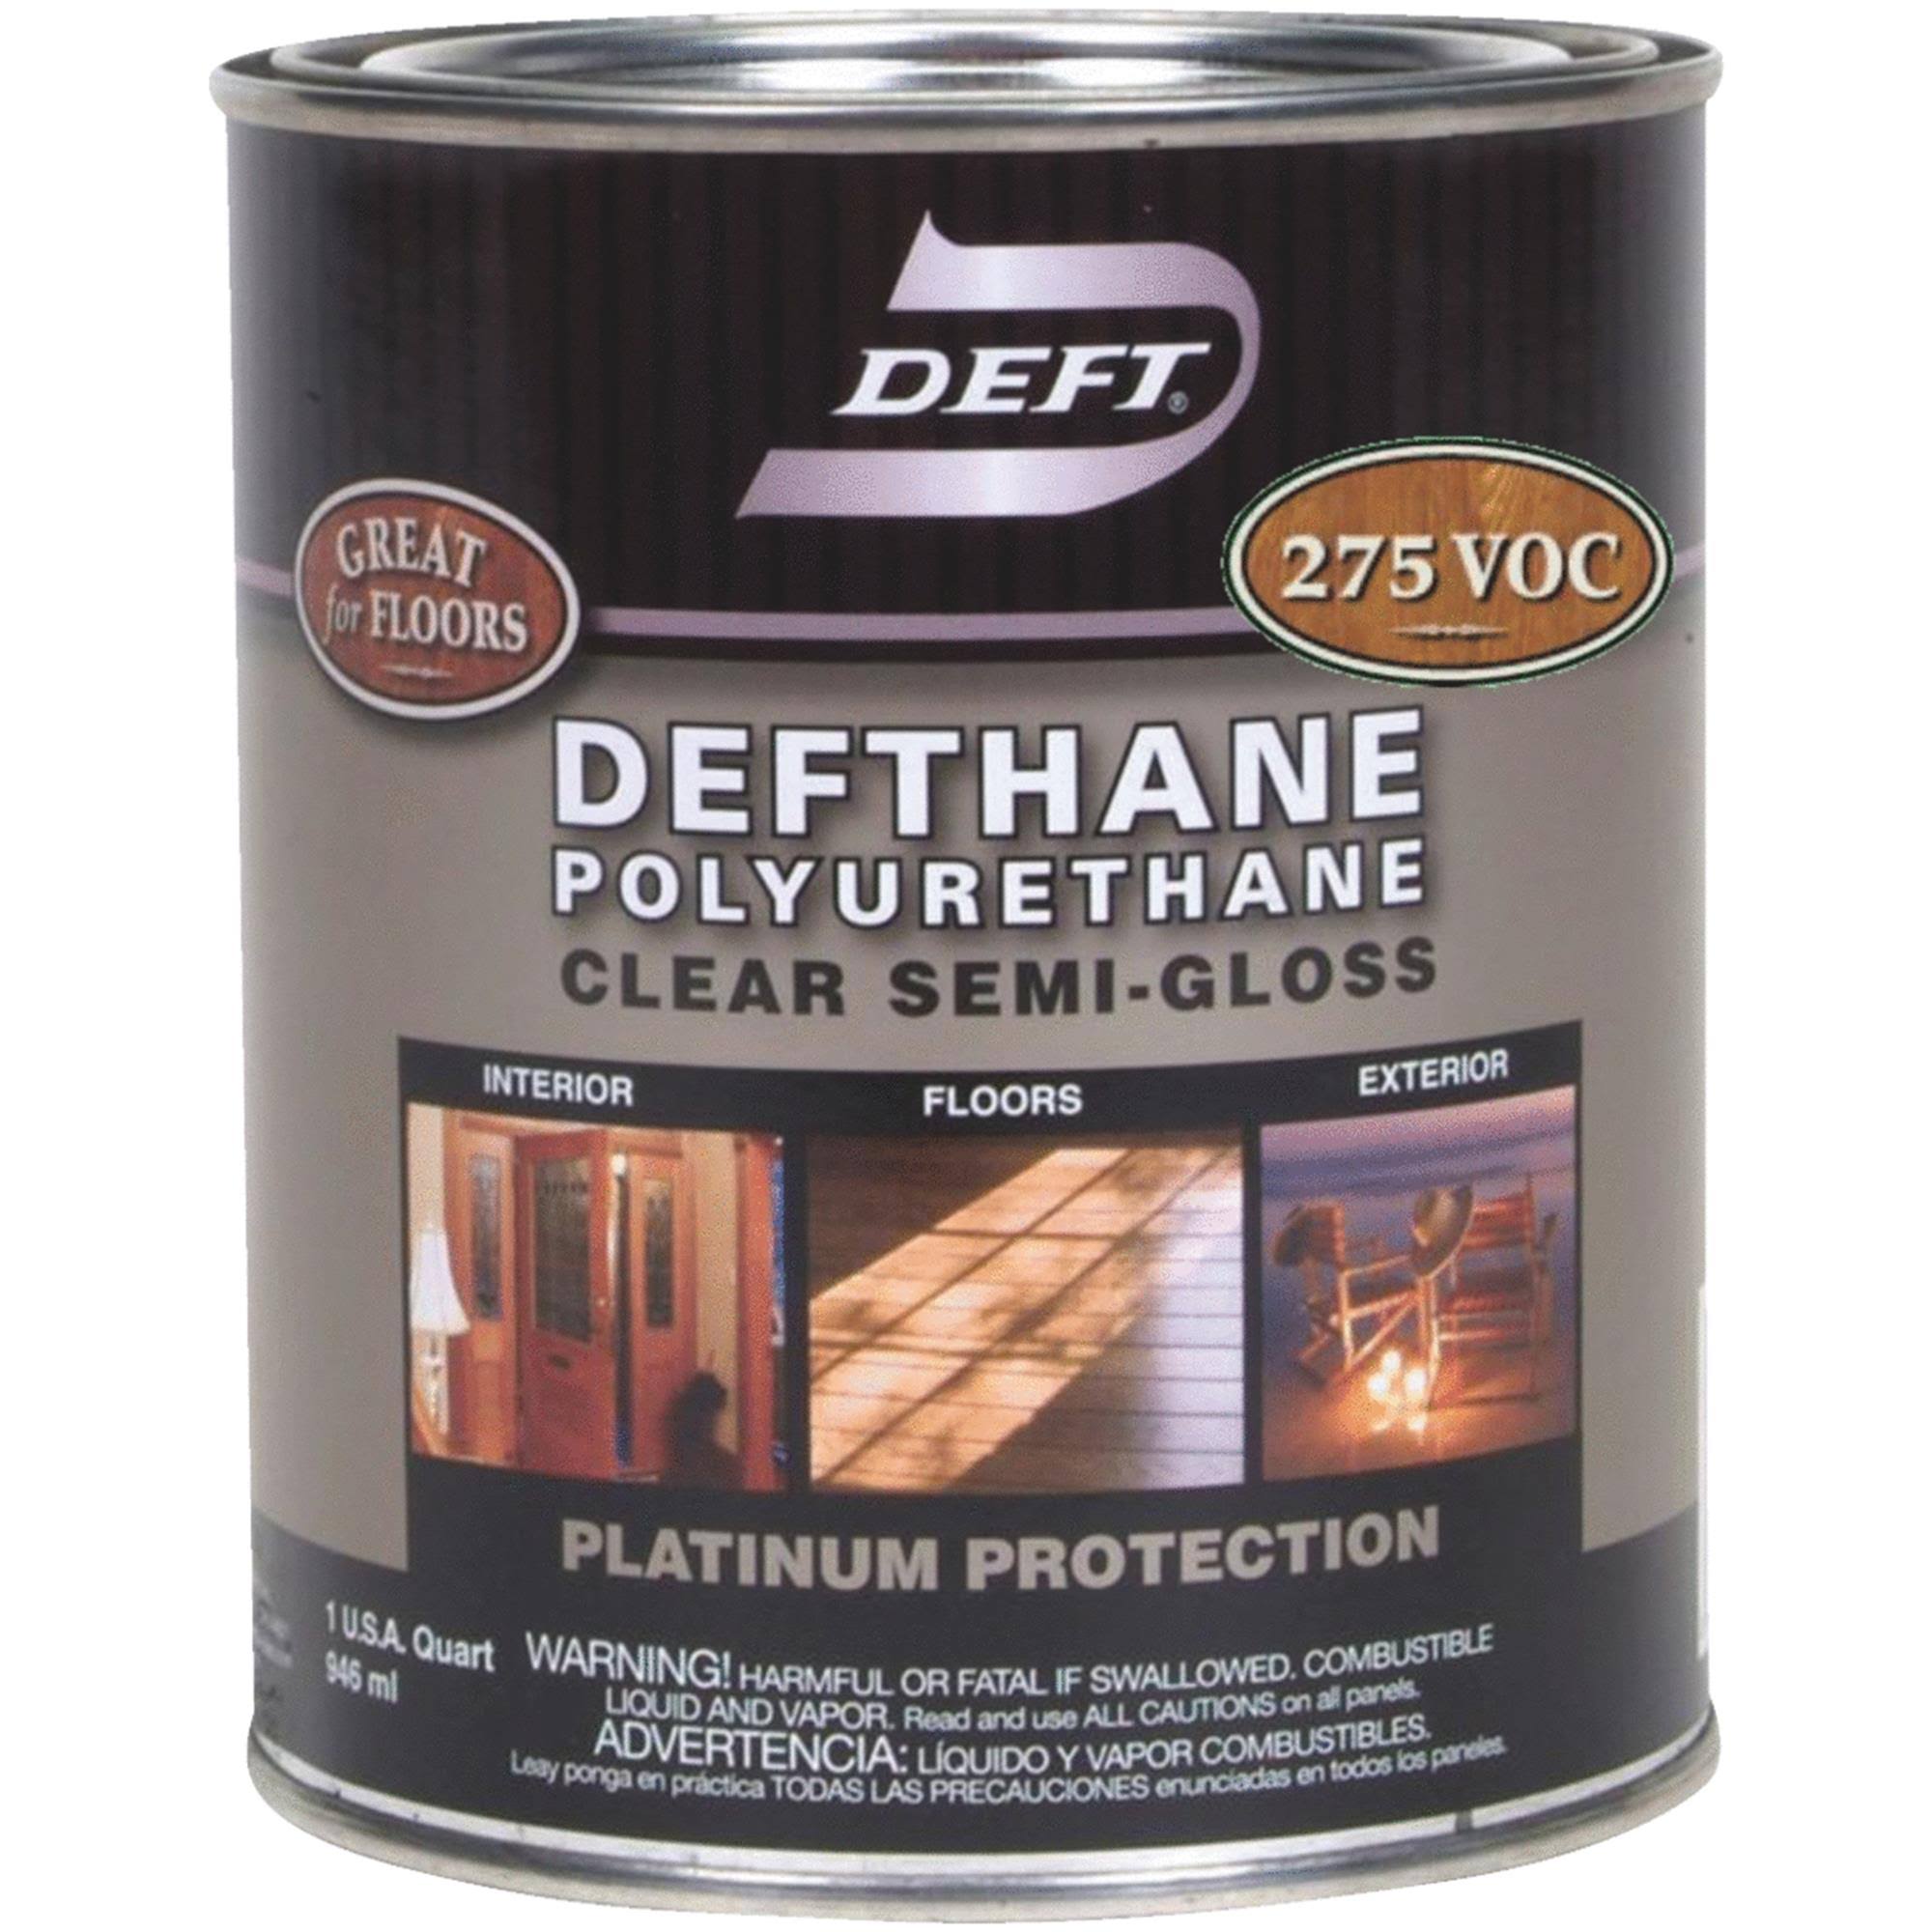 Deft Defthane Polyurethane - Clear Semi-Gloss